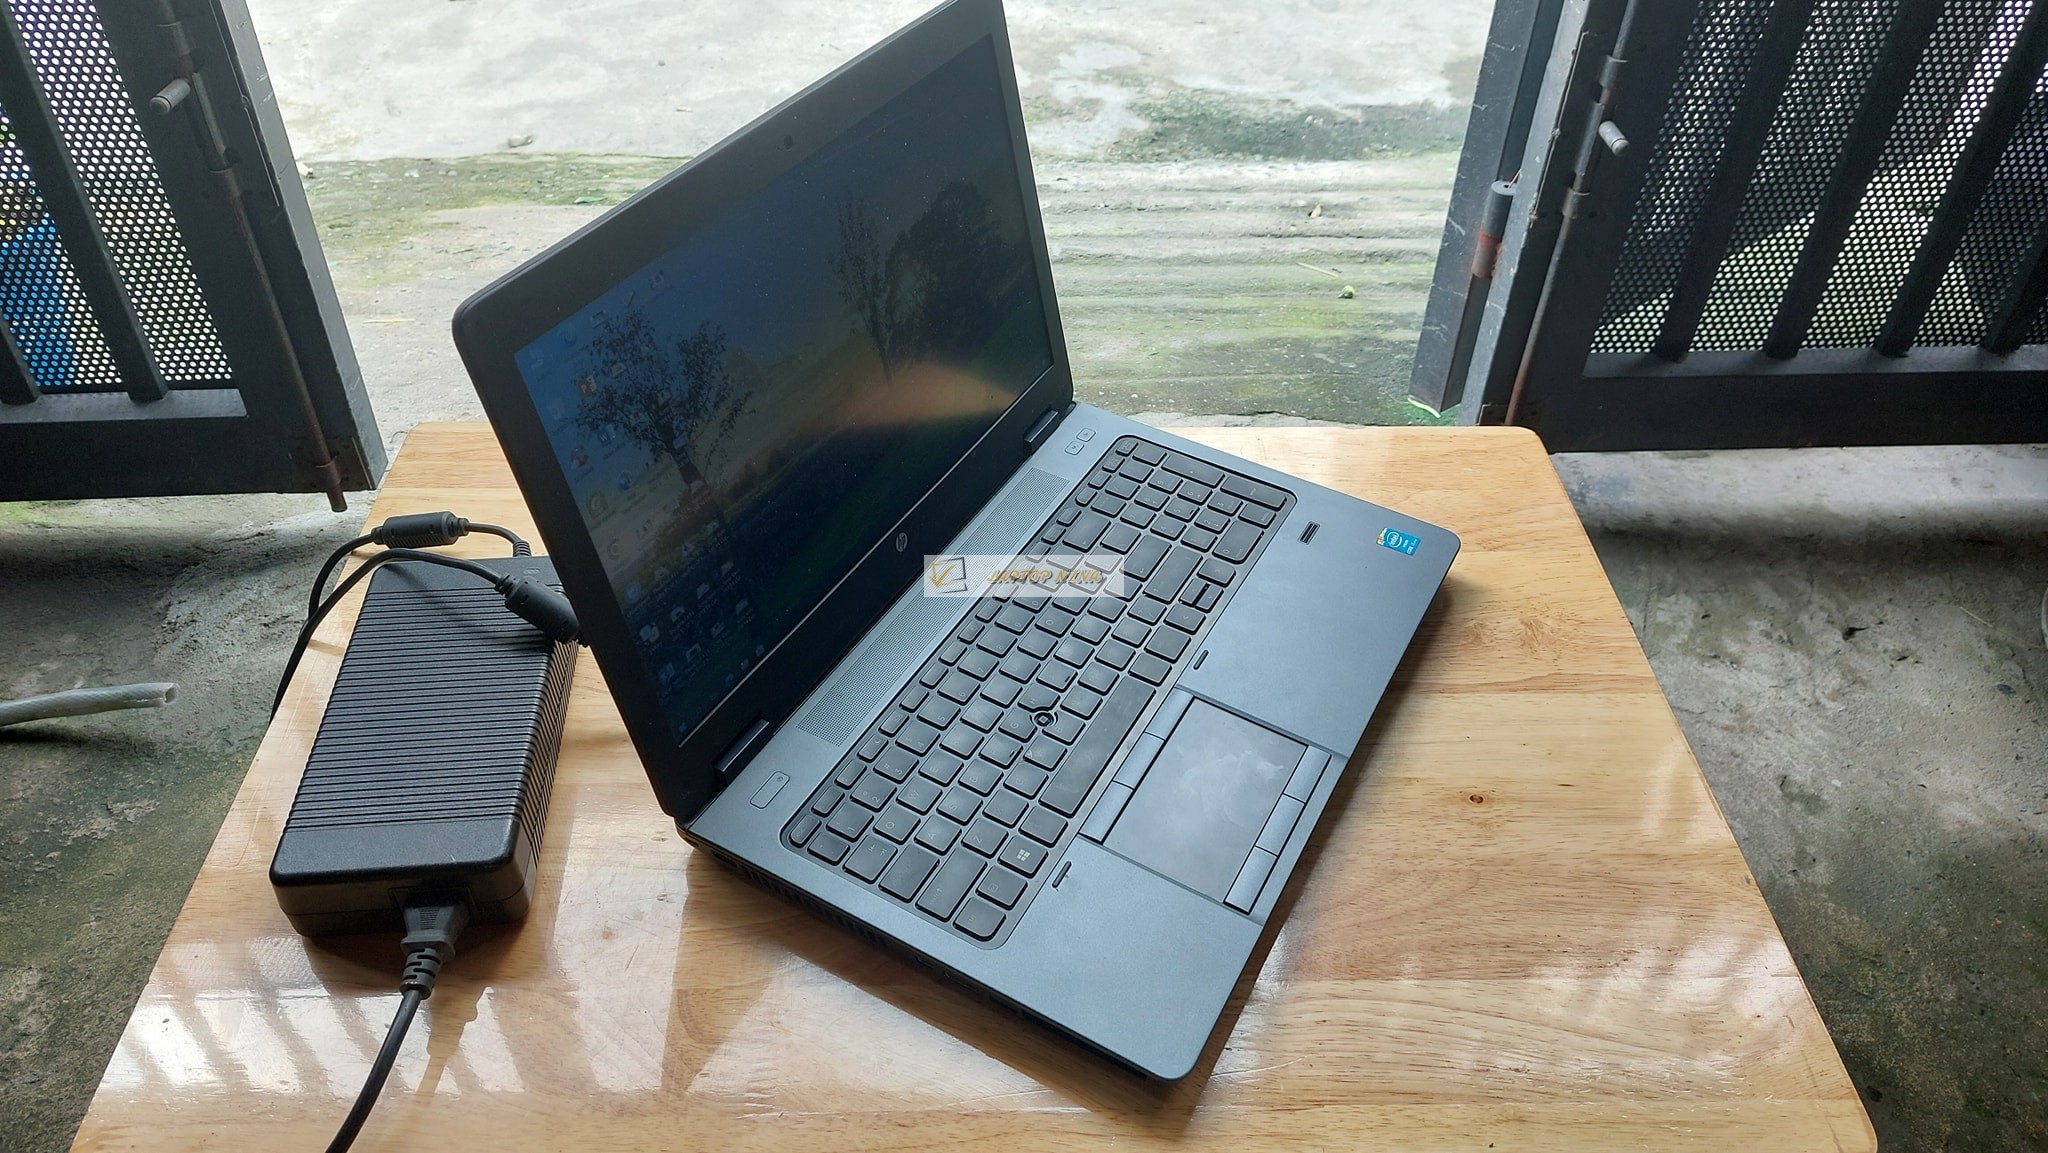 Laptop HP ZBook 15 G1 Core i7 4800QM ram 16G ssd 128gb Vga K1100 Full HD 2